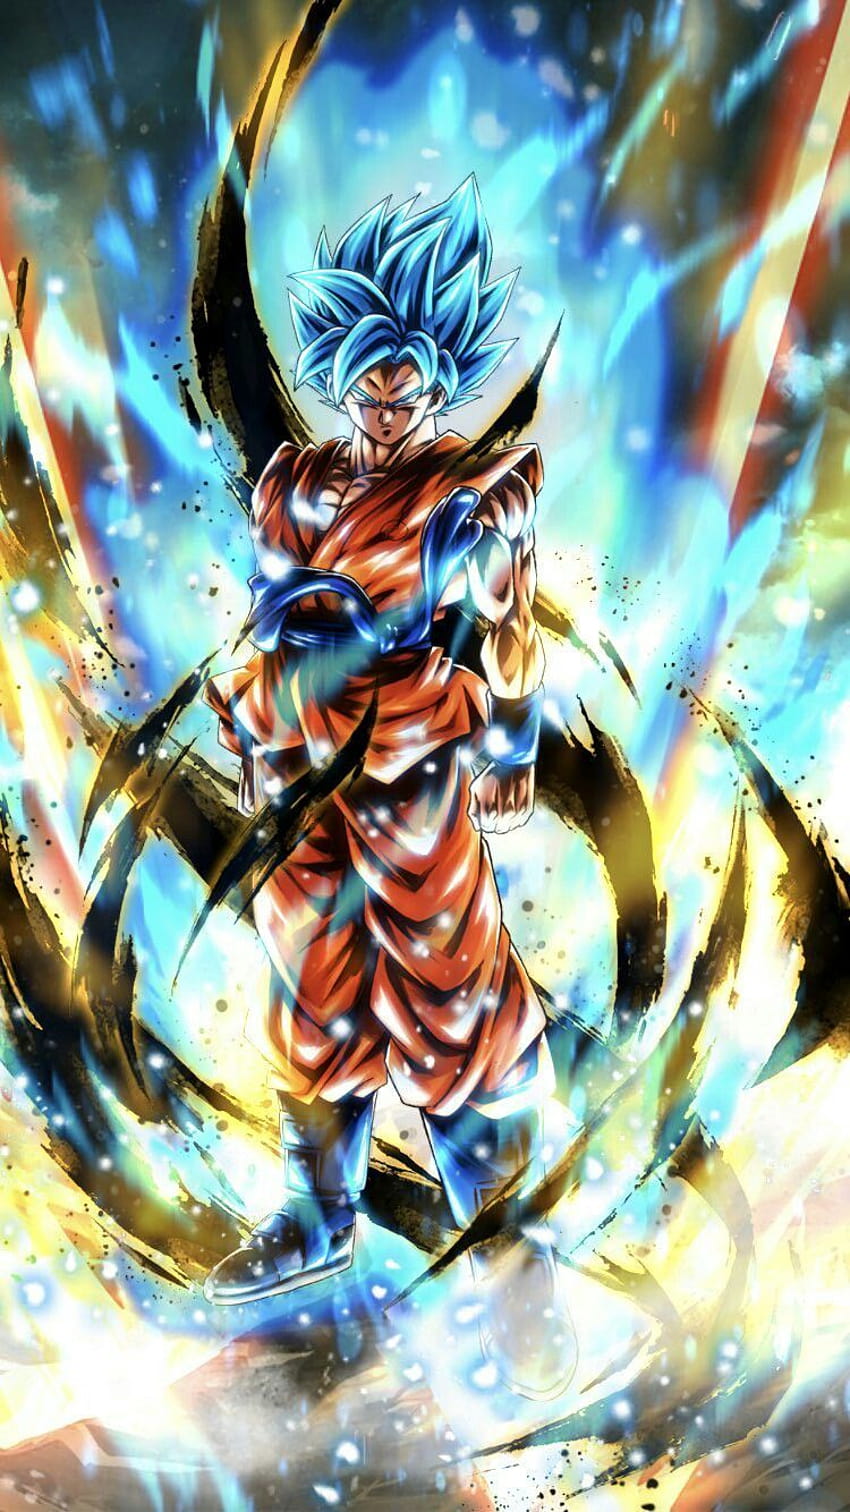 Goku super saiyan blue, super saiyan bóg ss goku Tapeta na telefon HD